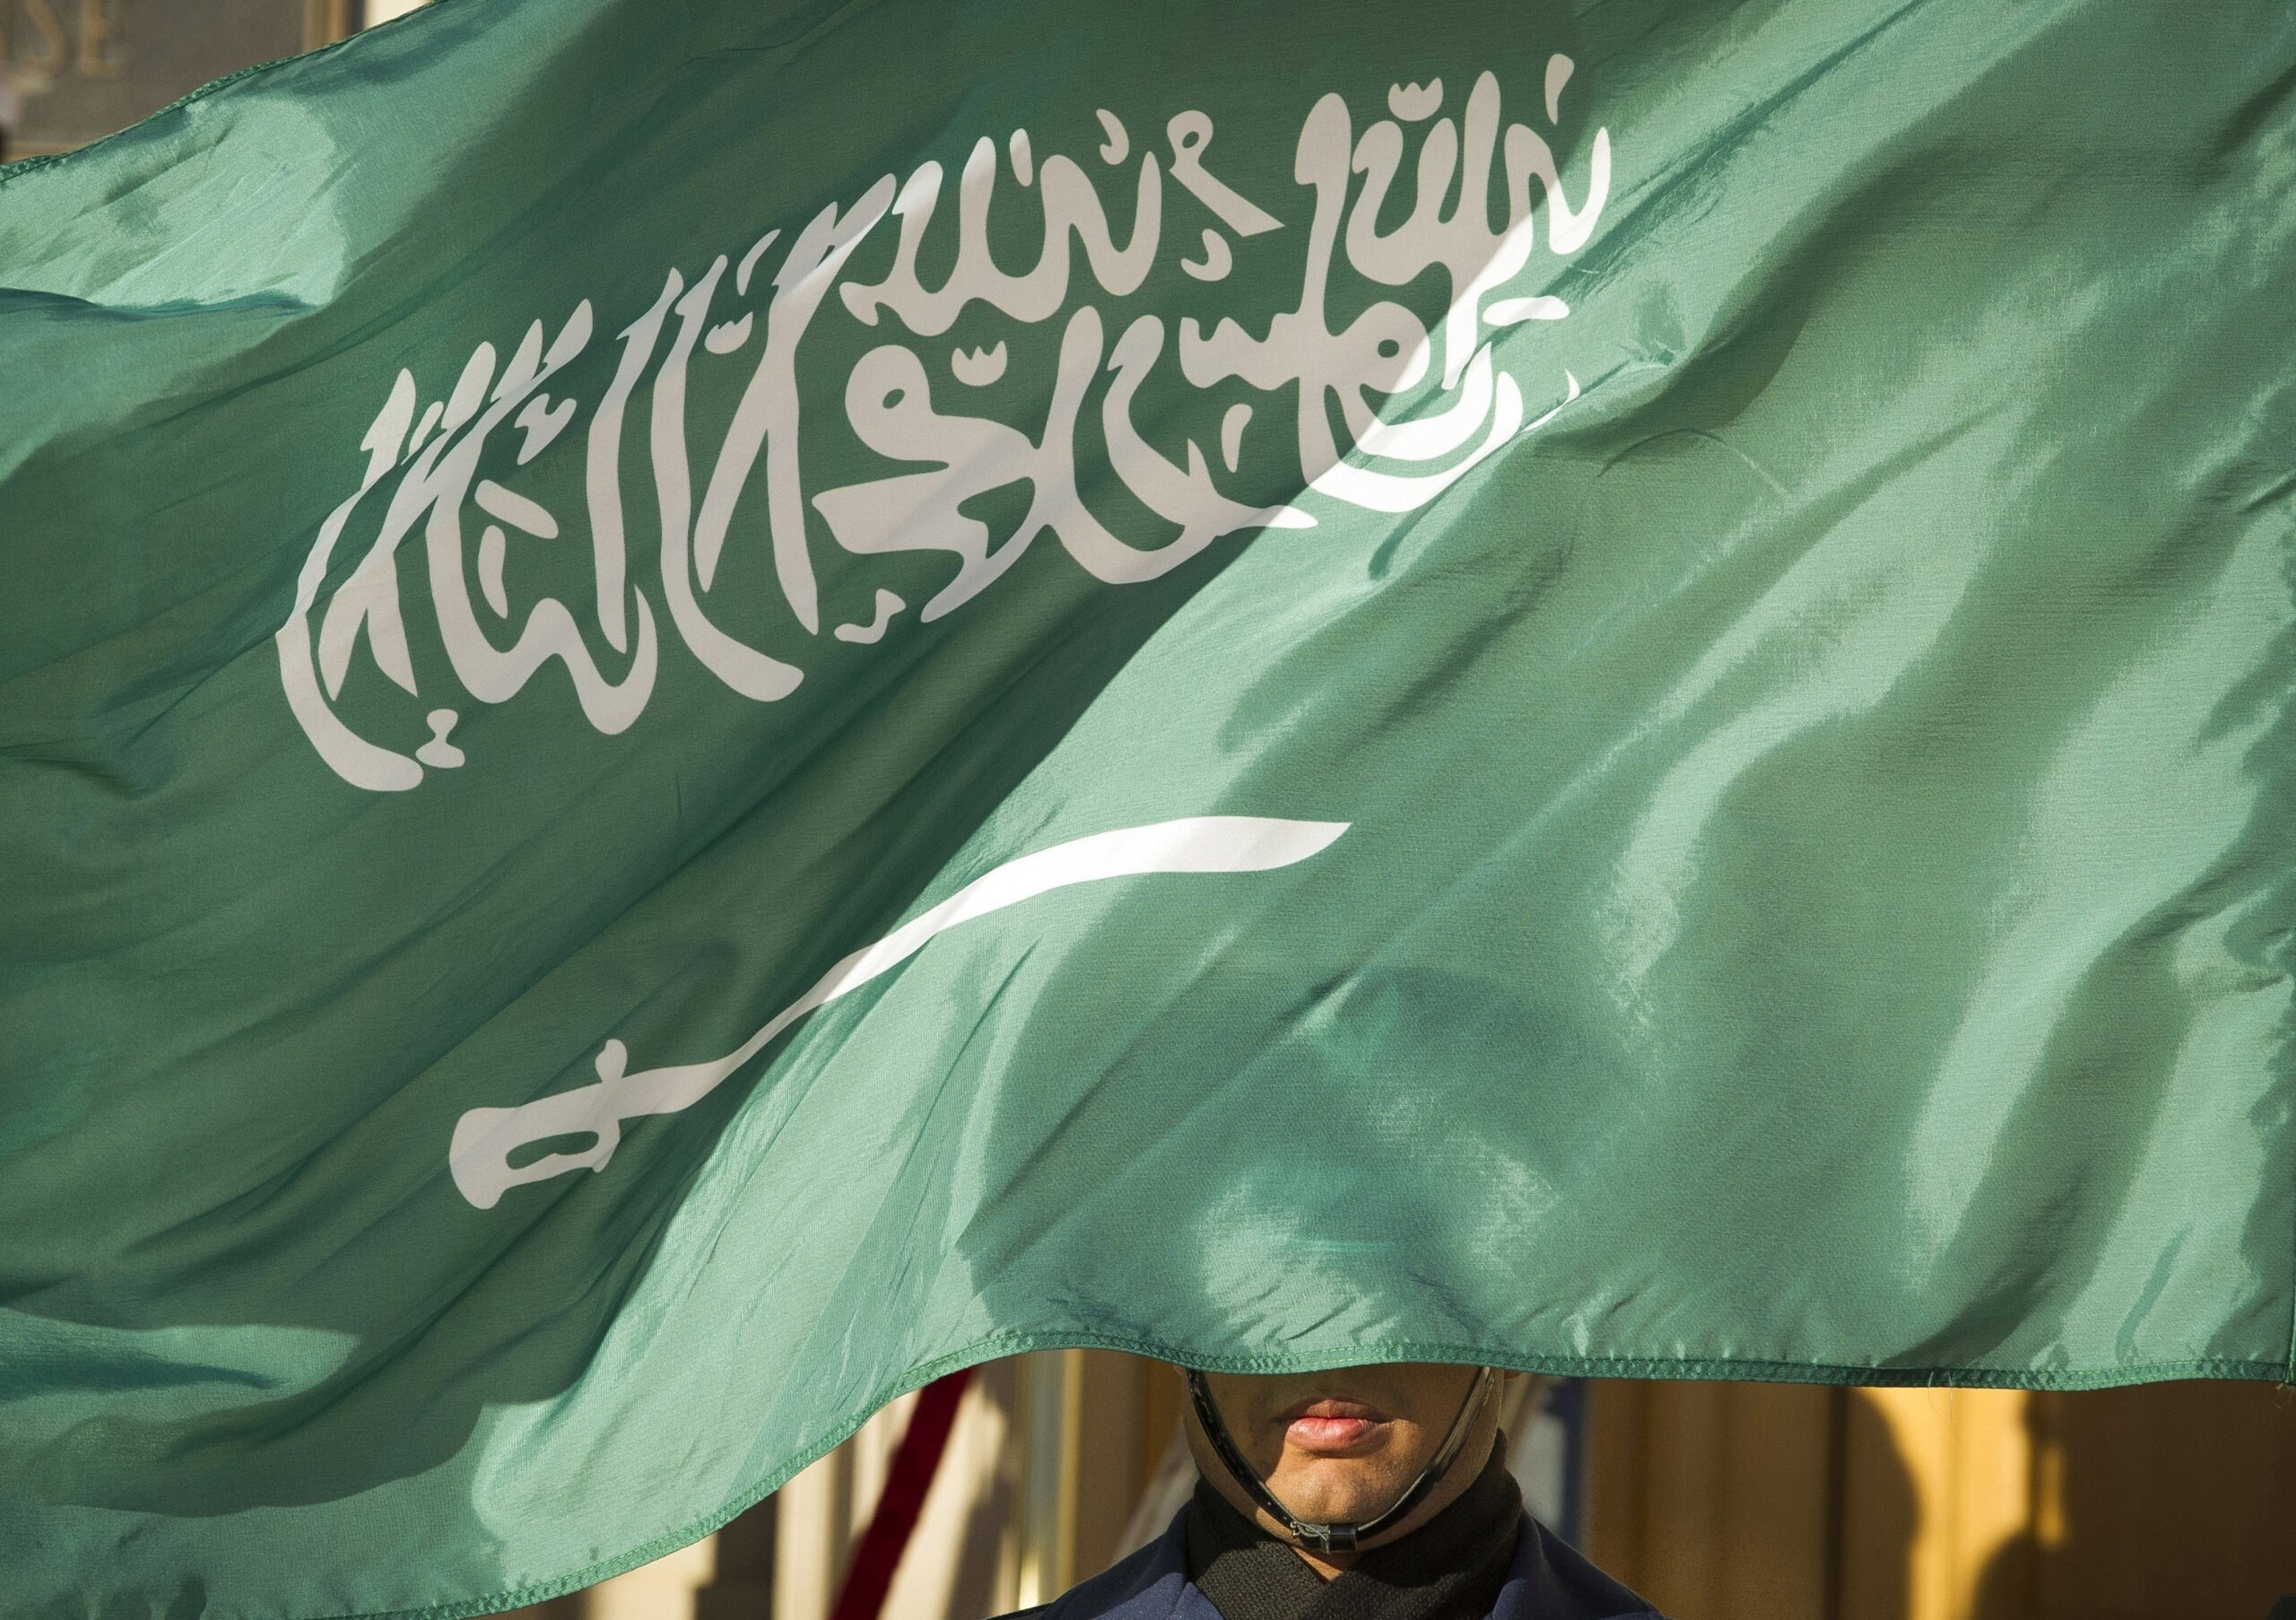 Σαουδική Αραβία: Στην εκτέλεση πέντε καταδικασθέντων για τρομοκρατία προχώρησαν οι αρχές – Ανάμεσά τους ένας Αιγύπτιος